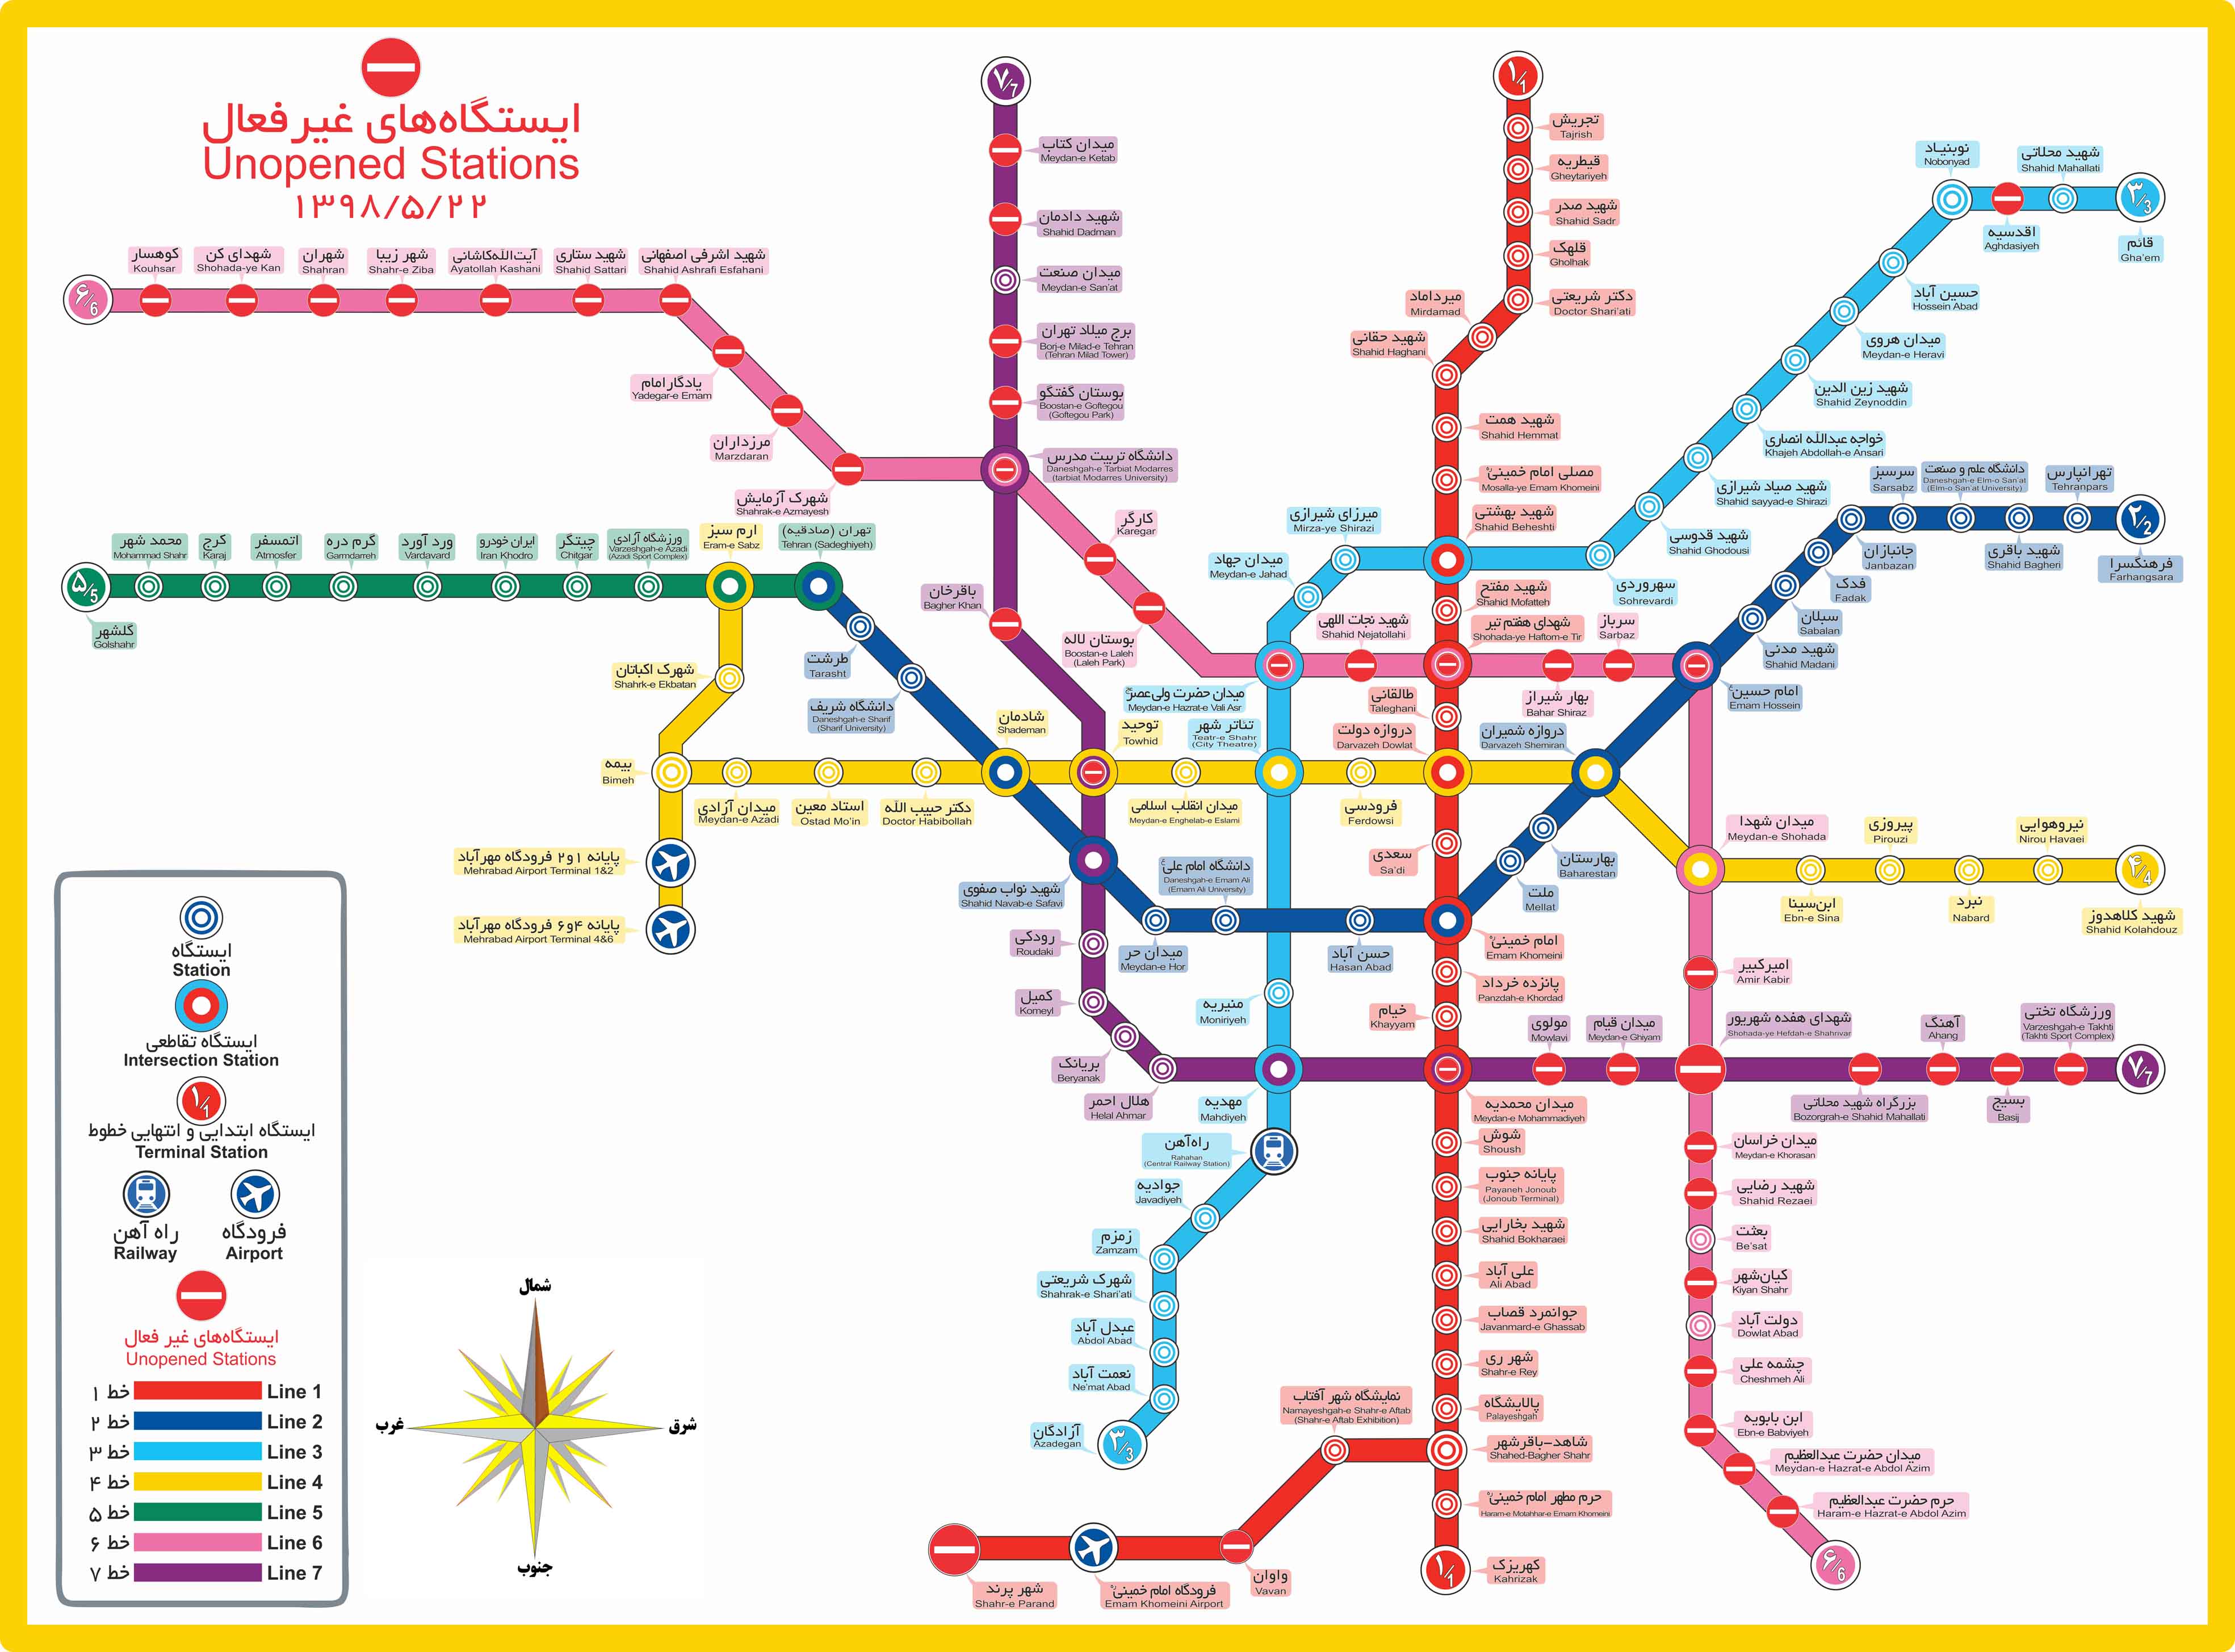 تصویر کامل نقشه مترو تهران